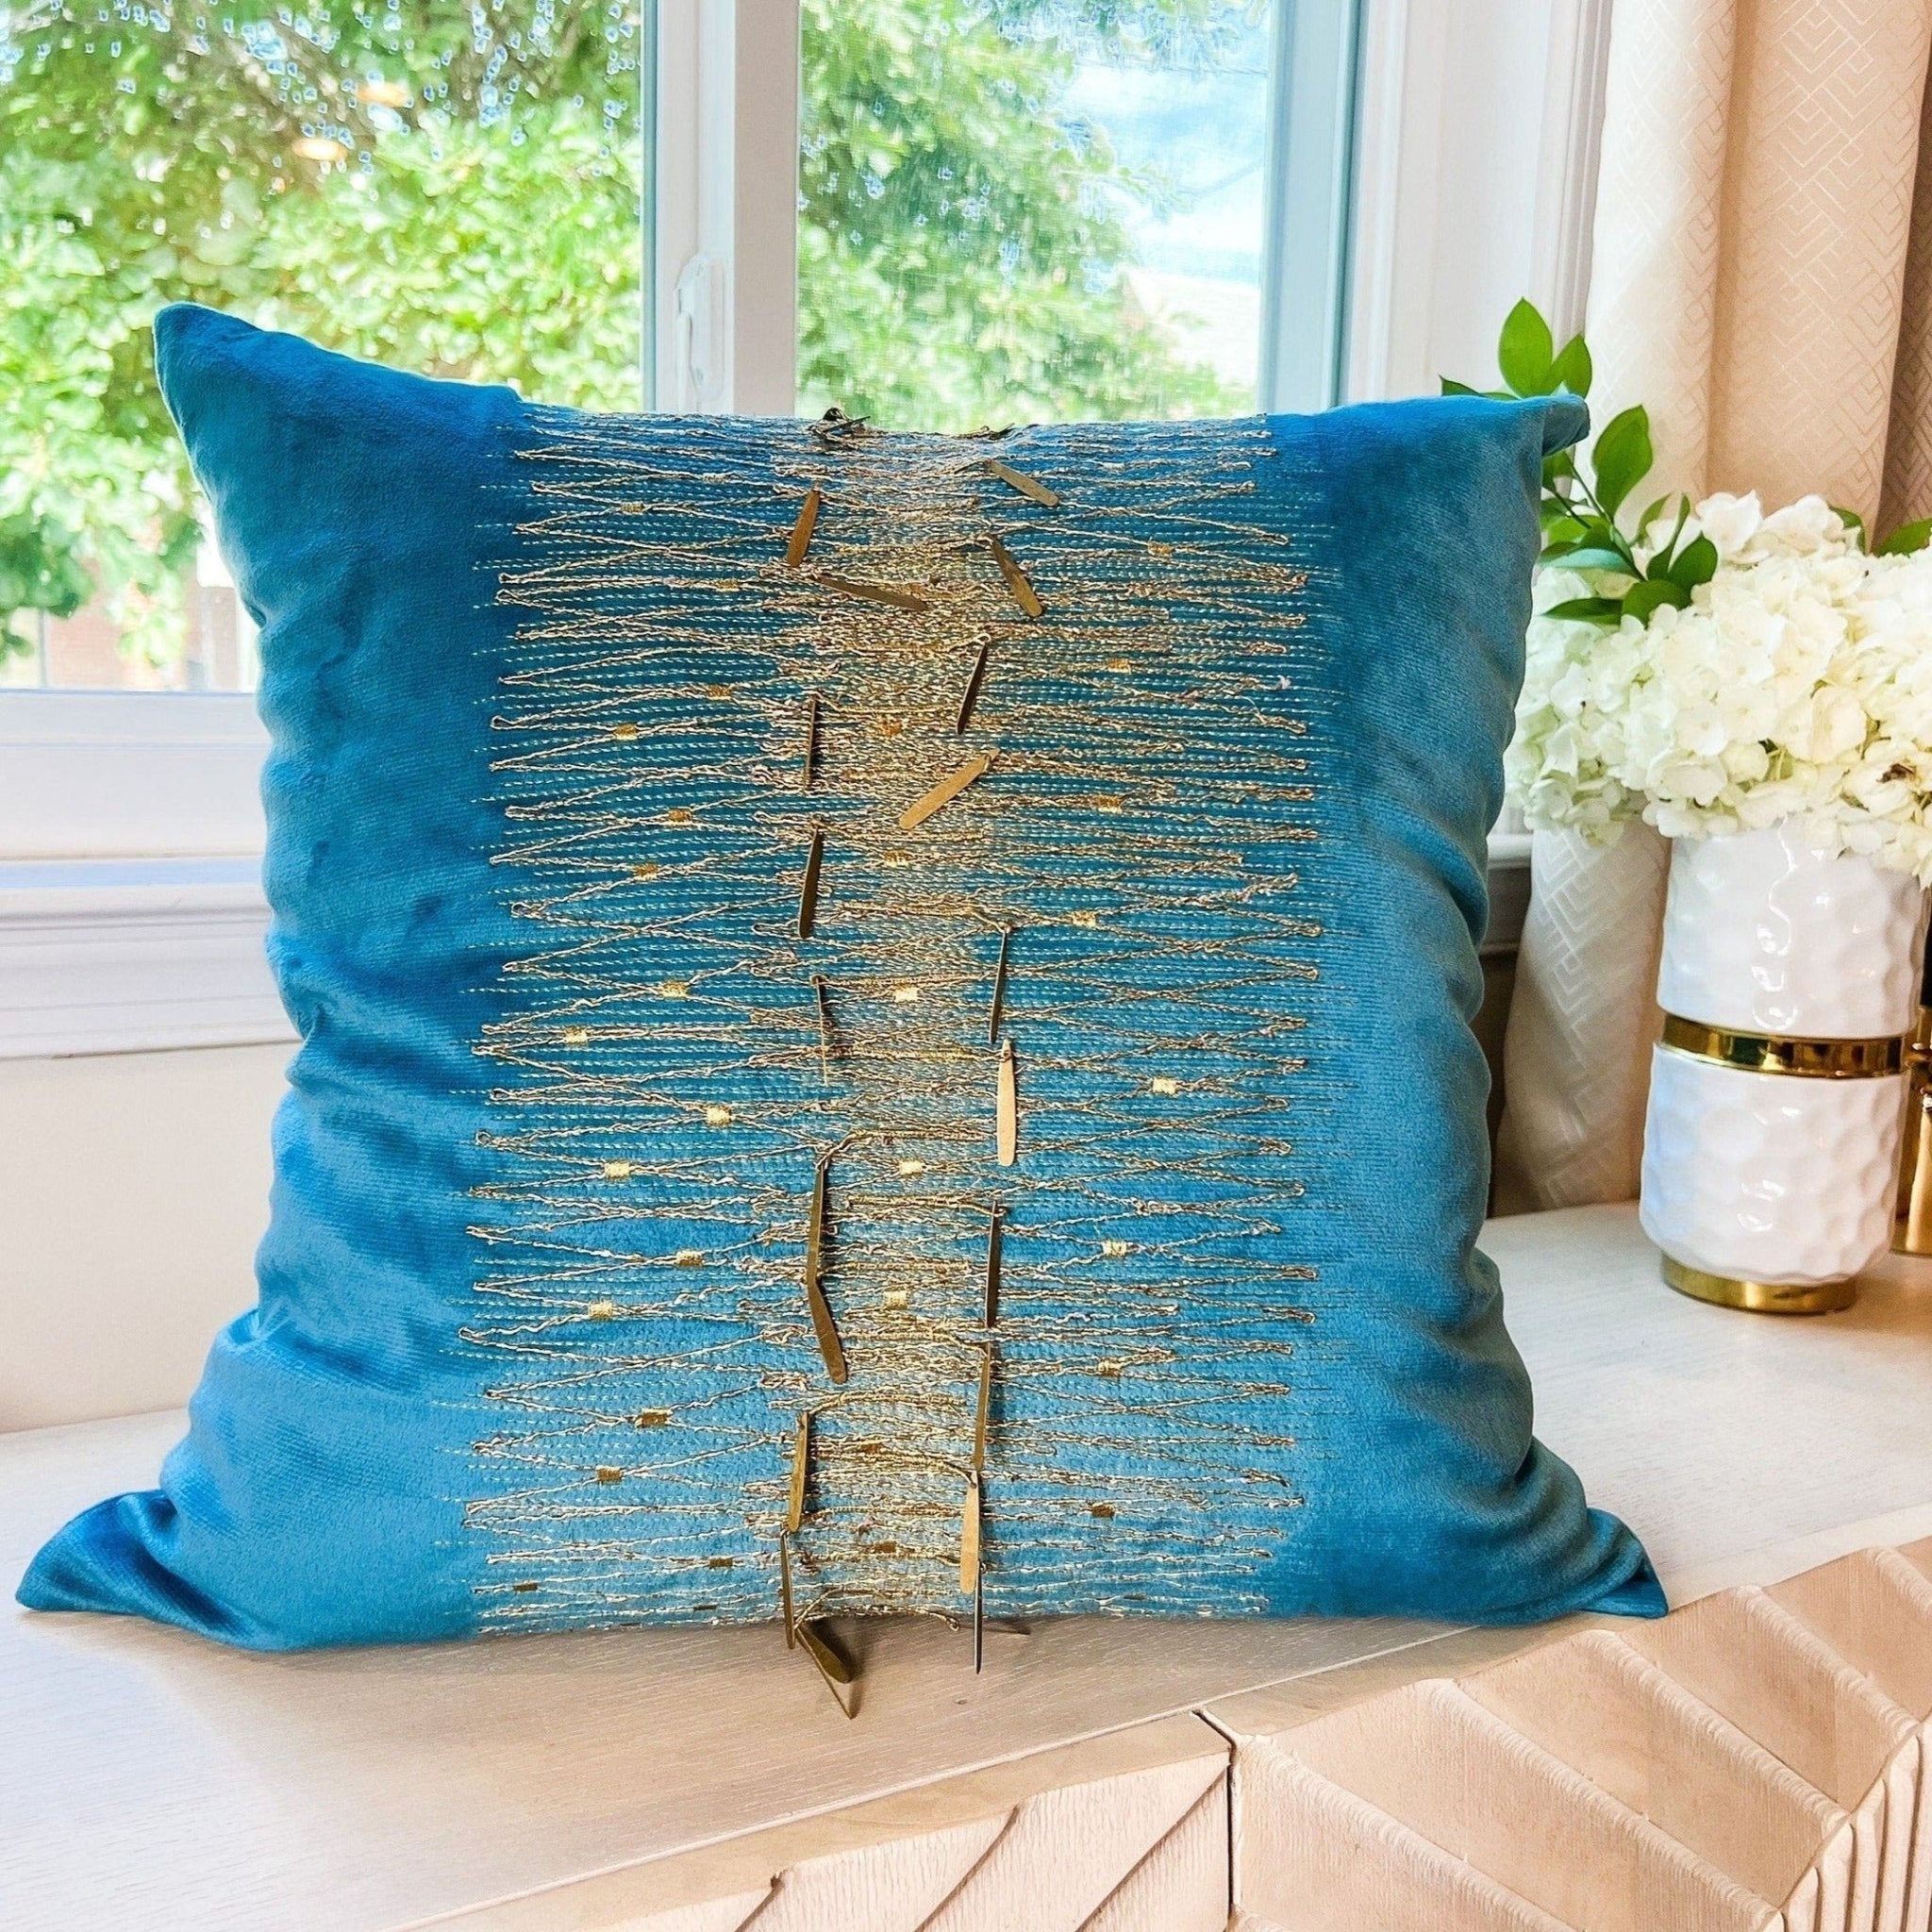 Glam Pillow Cover | Luxury Teal Velvet Pillow | 20x20 Pillow Cover | Metallic Pillow | Decorative Pillow | Accent Pillow | Housewarming Gift - DiamondValeDecor